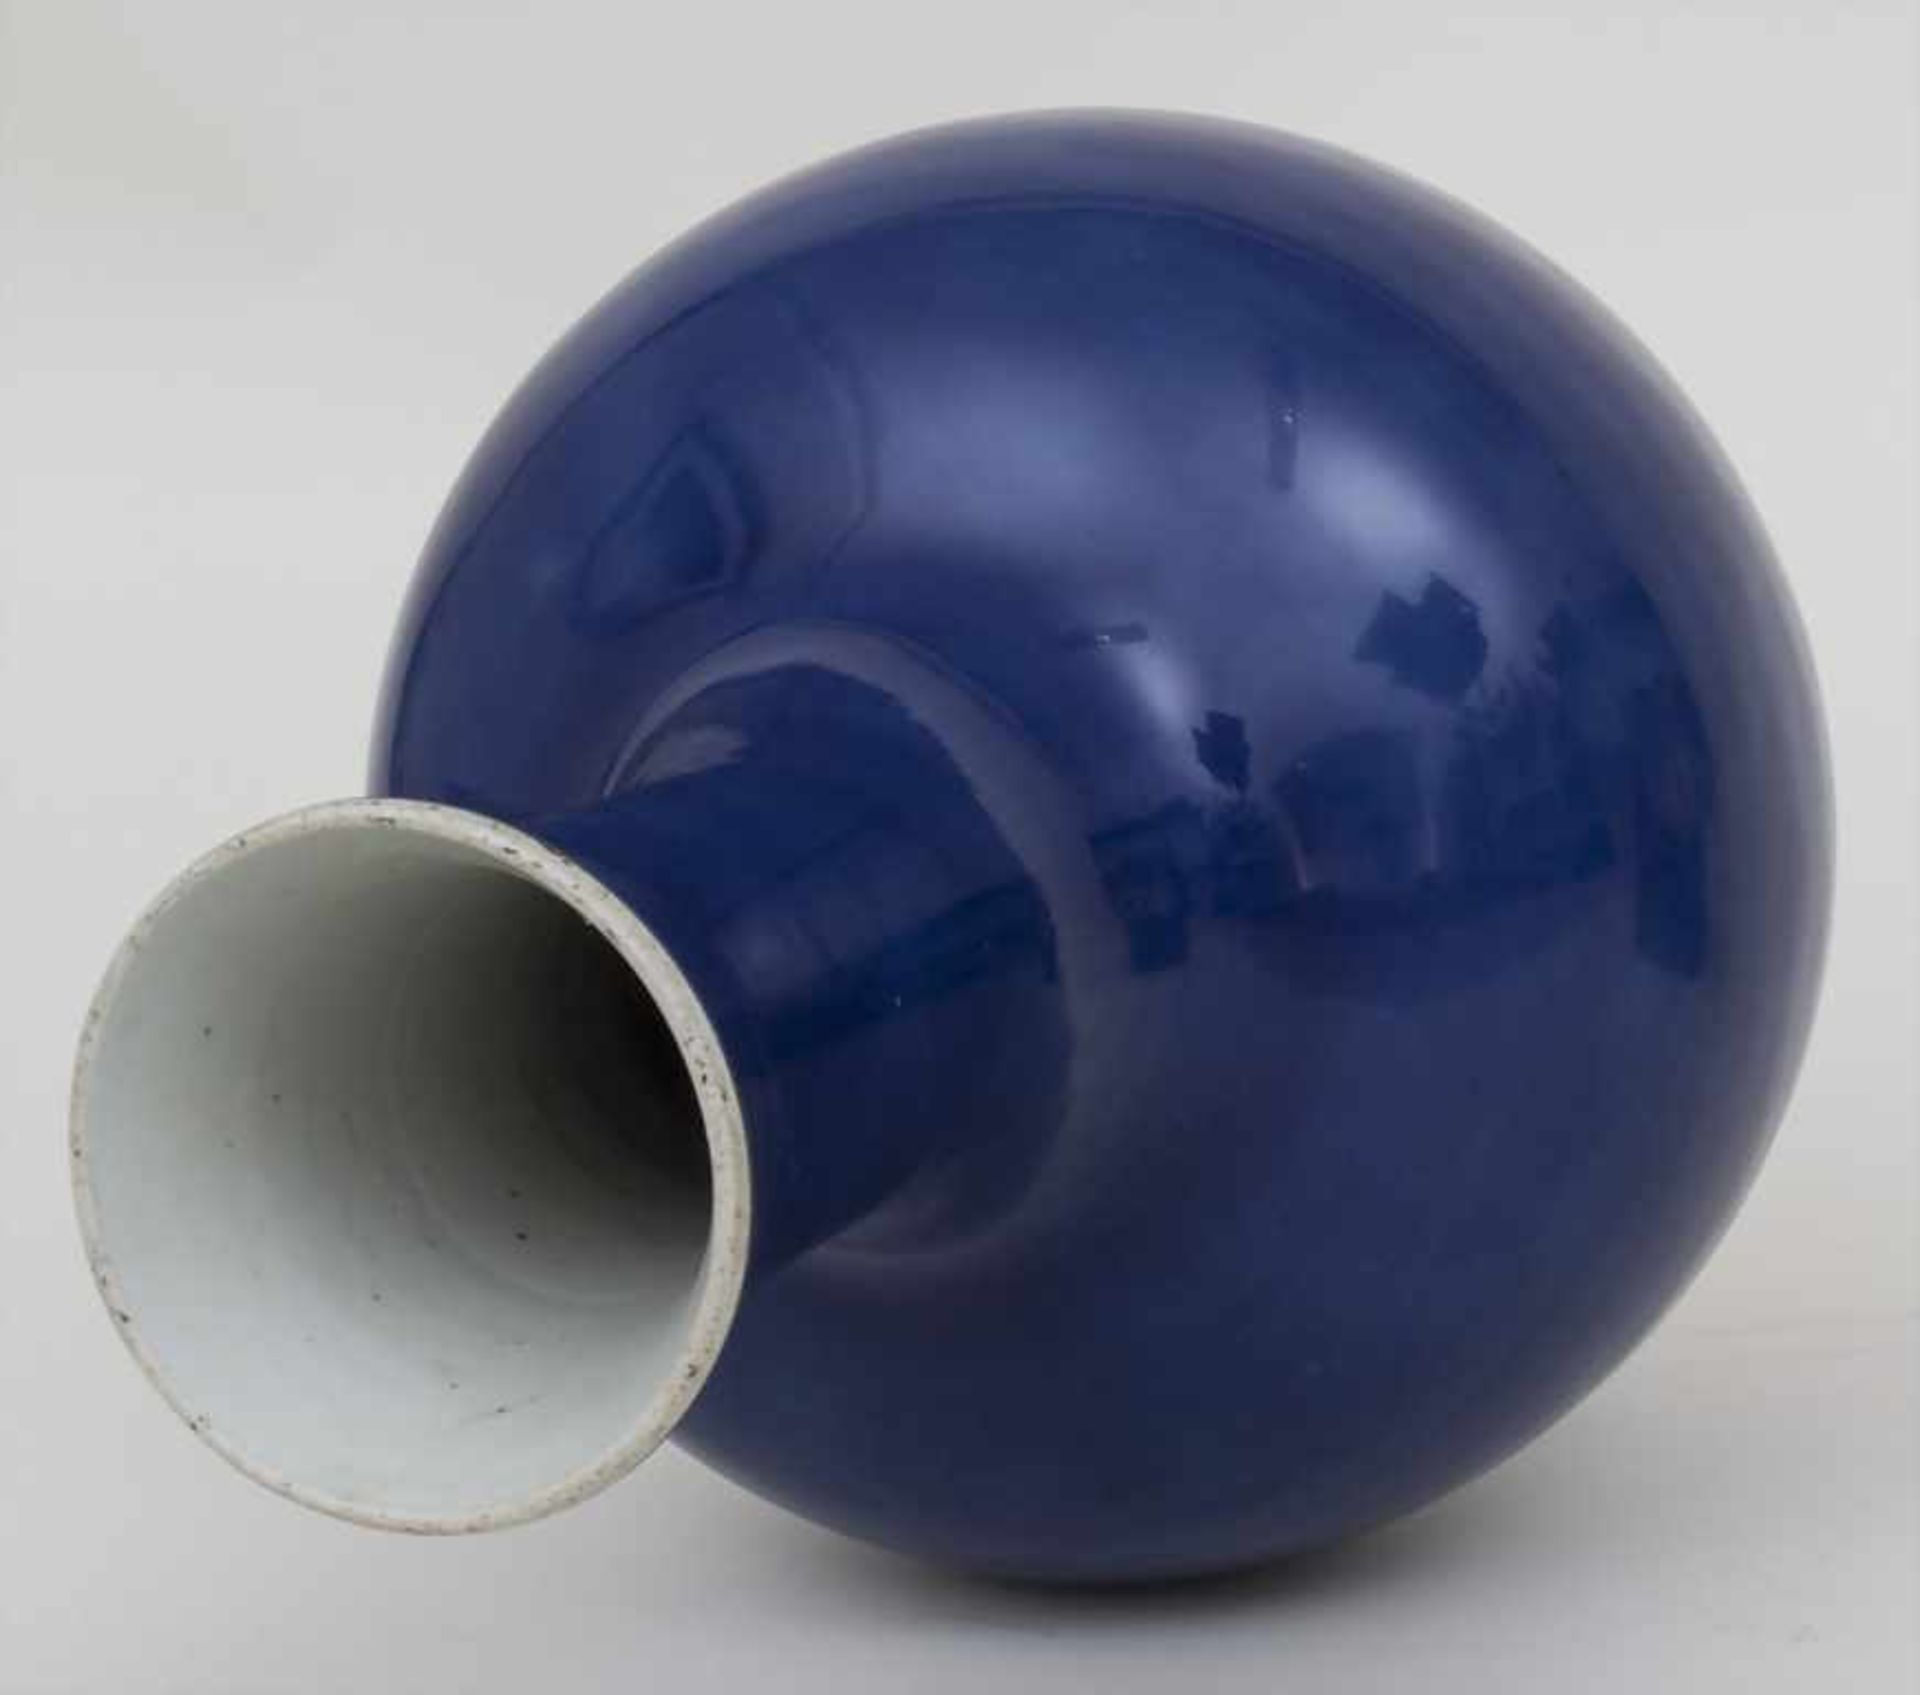 Puderblaue Porzellan-Vase / A powder blue porcelain vase, China, 18. Jh.Material: Porzellan, - Image 2 of 4